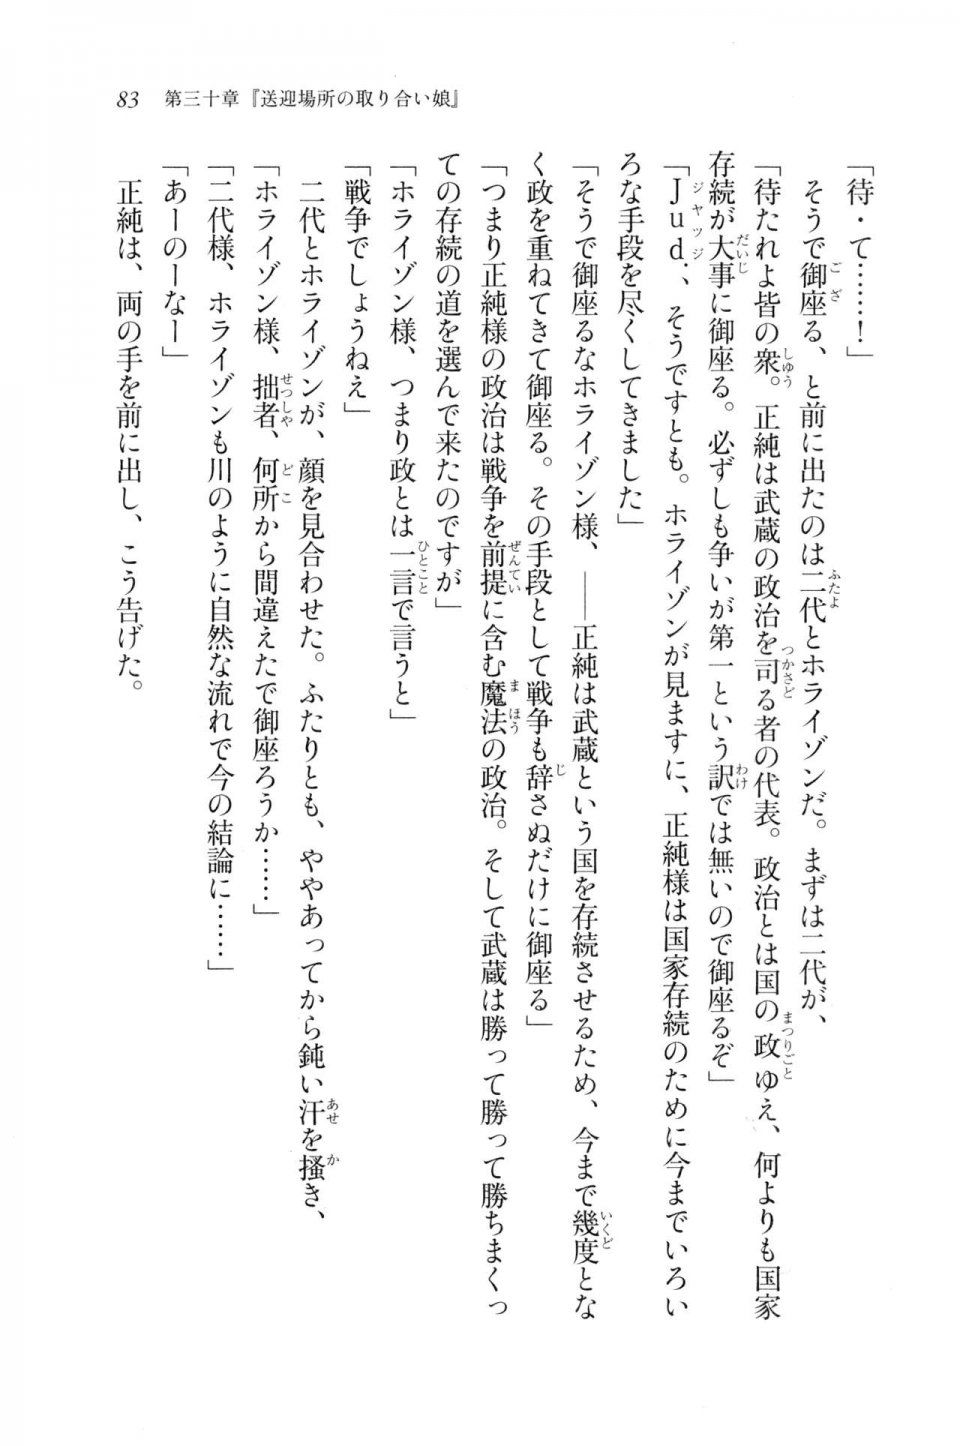 Kyoukai Senjou no Horizon LN Vol 20(8B) - Photo #83